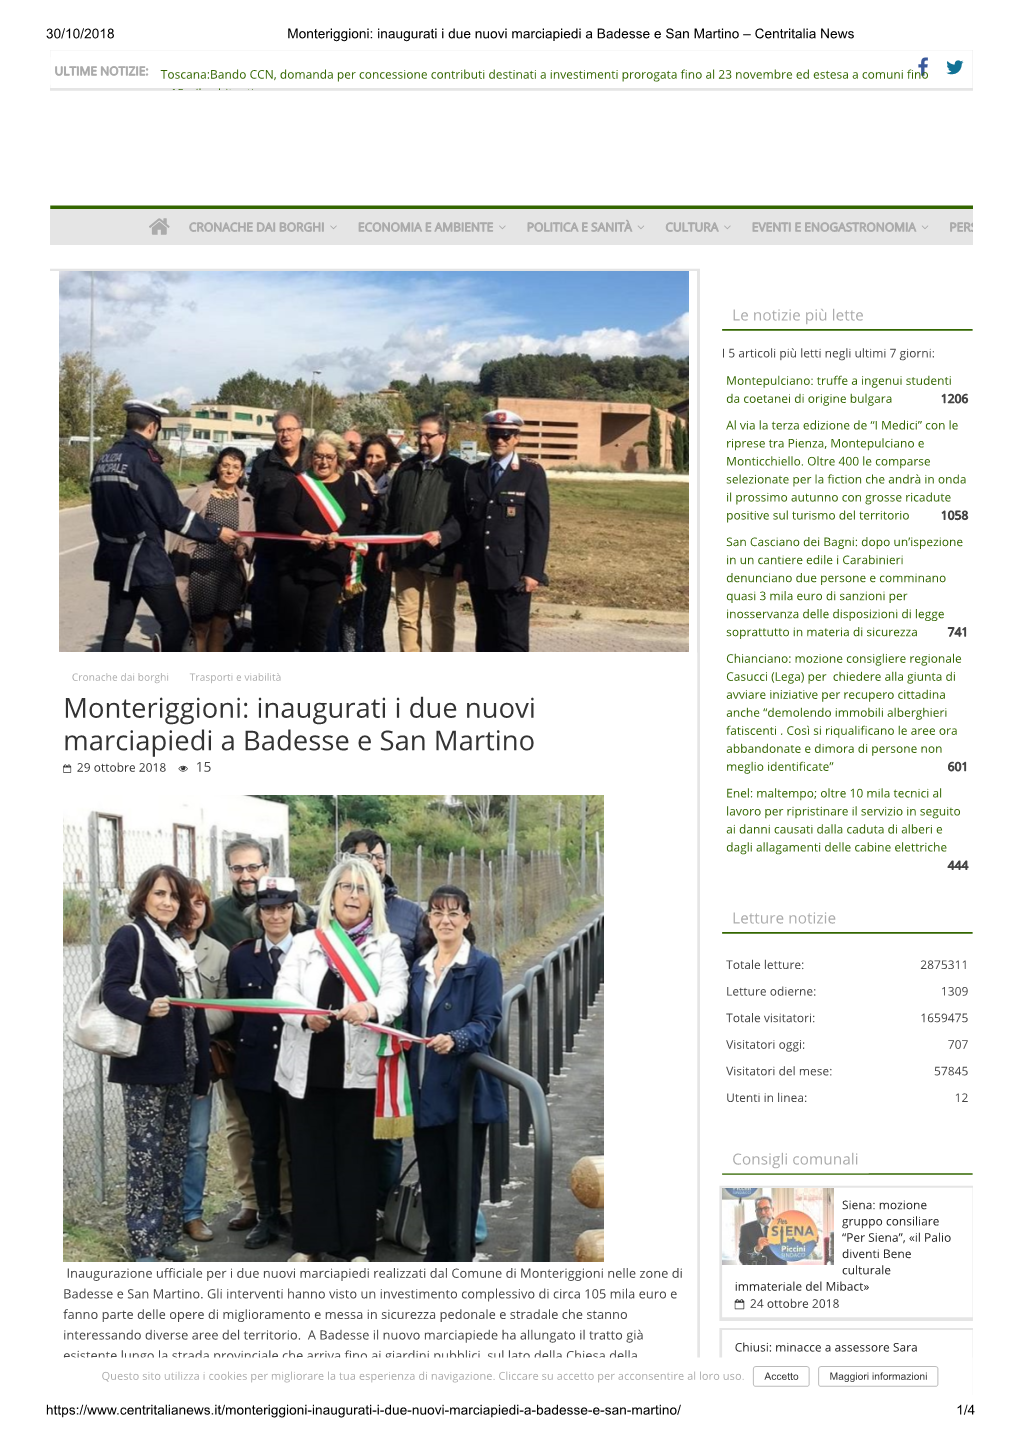 Monteriggioni: Inaugurati I Due Nuovi Marciapiedi a Badesse E San Martino – Centritalia News